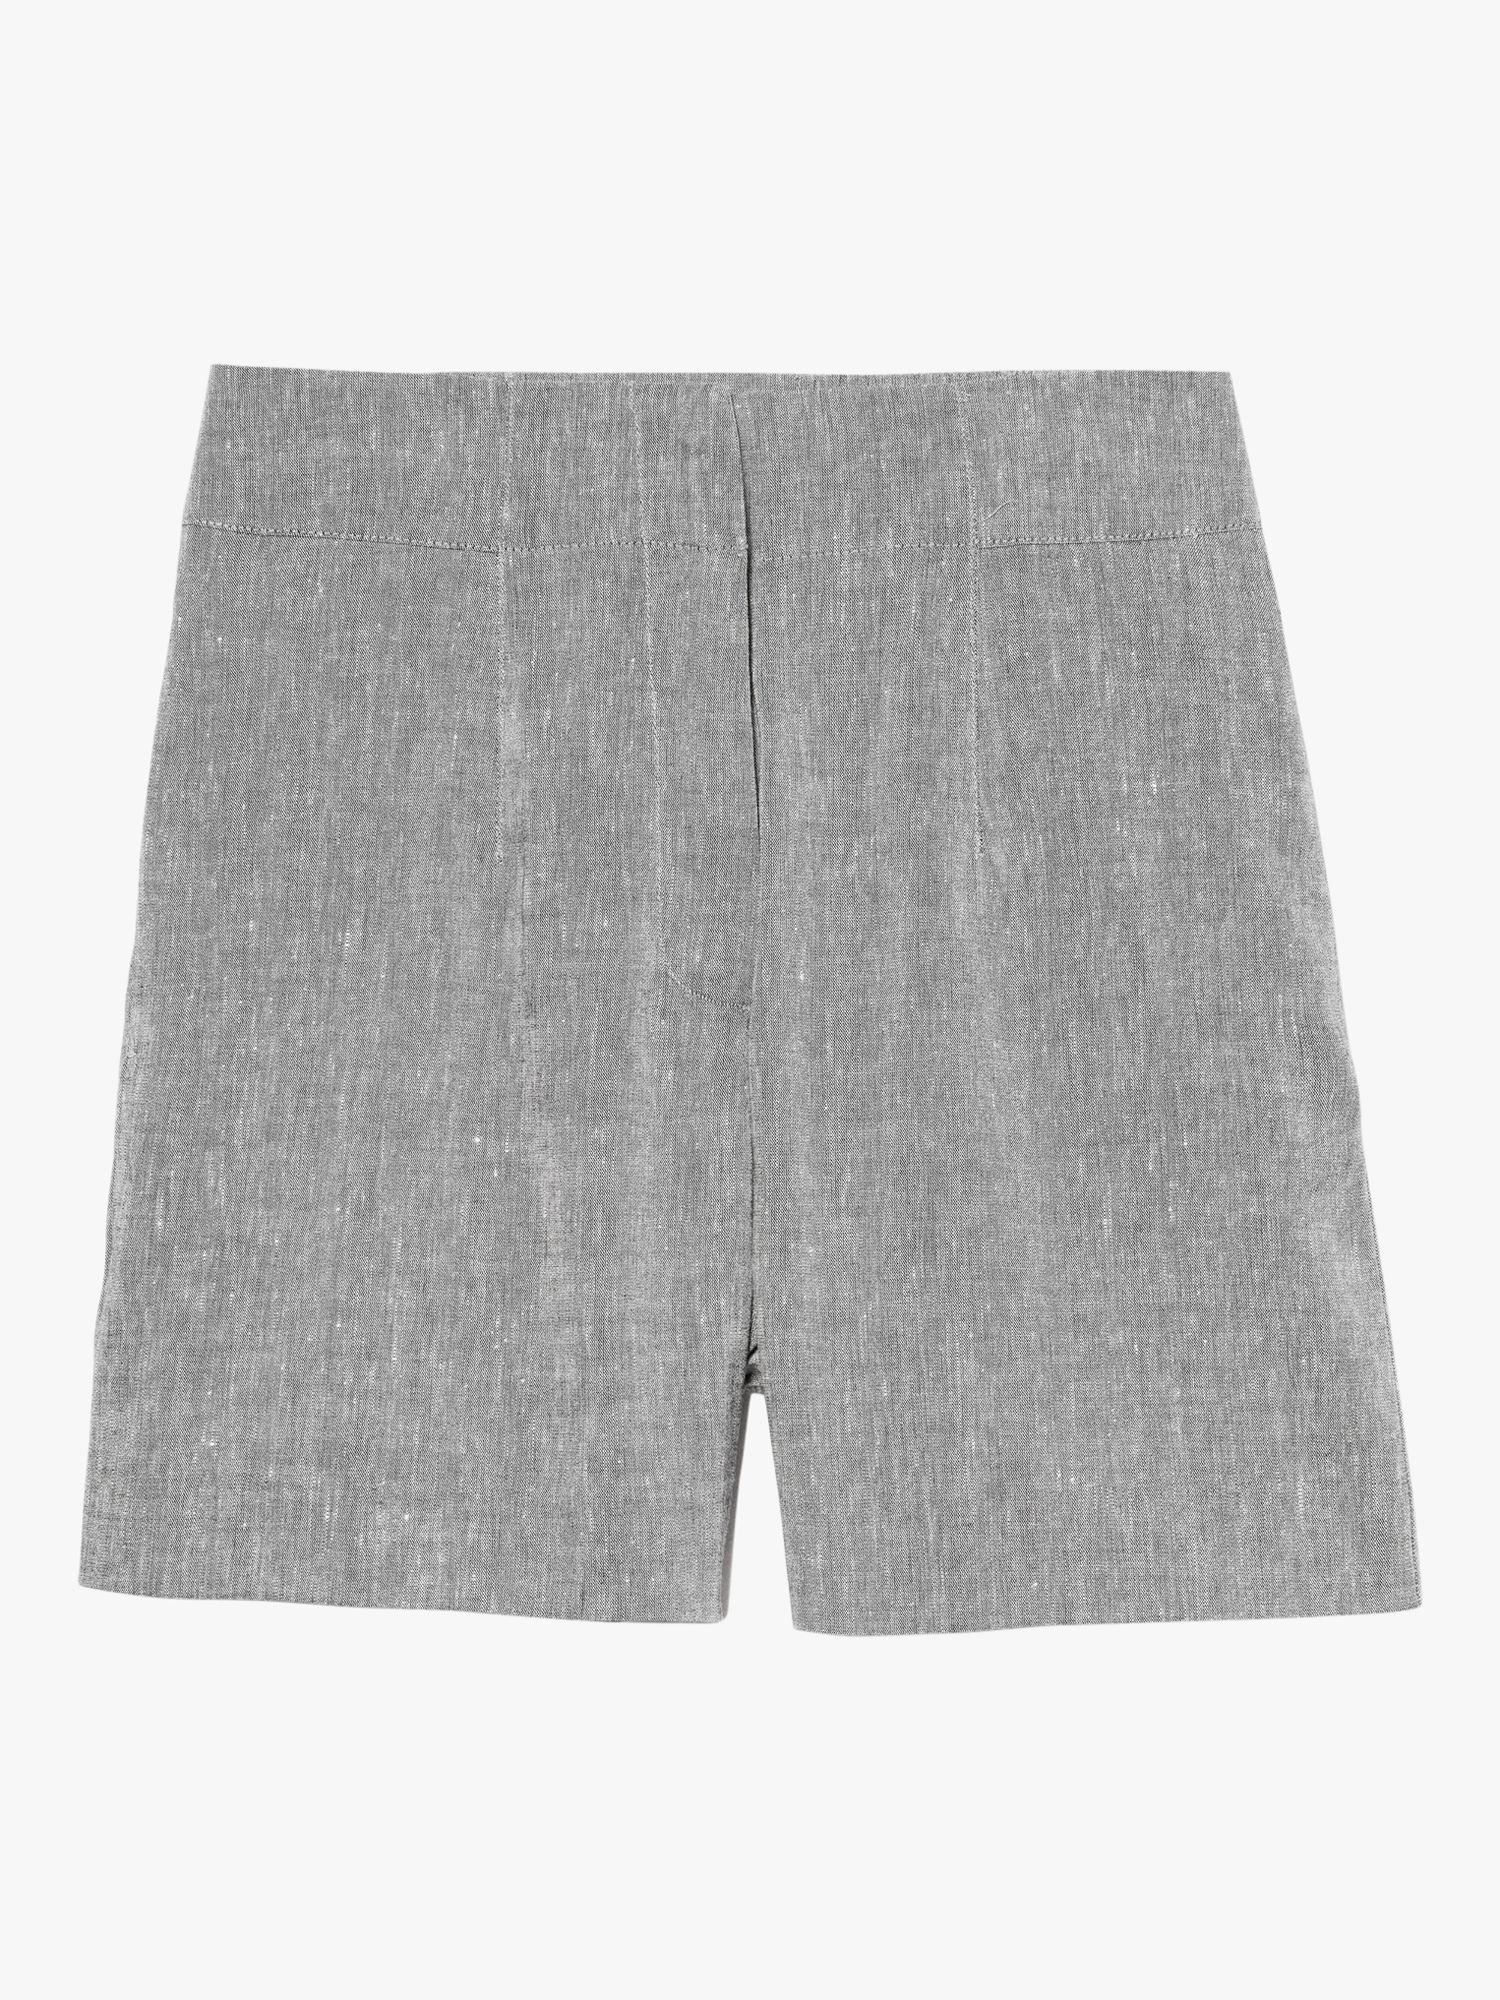 SISLEY Linen Blend High Waist Shorts, Grey, 8